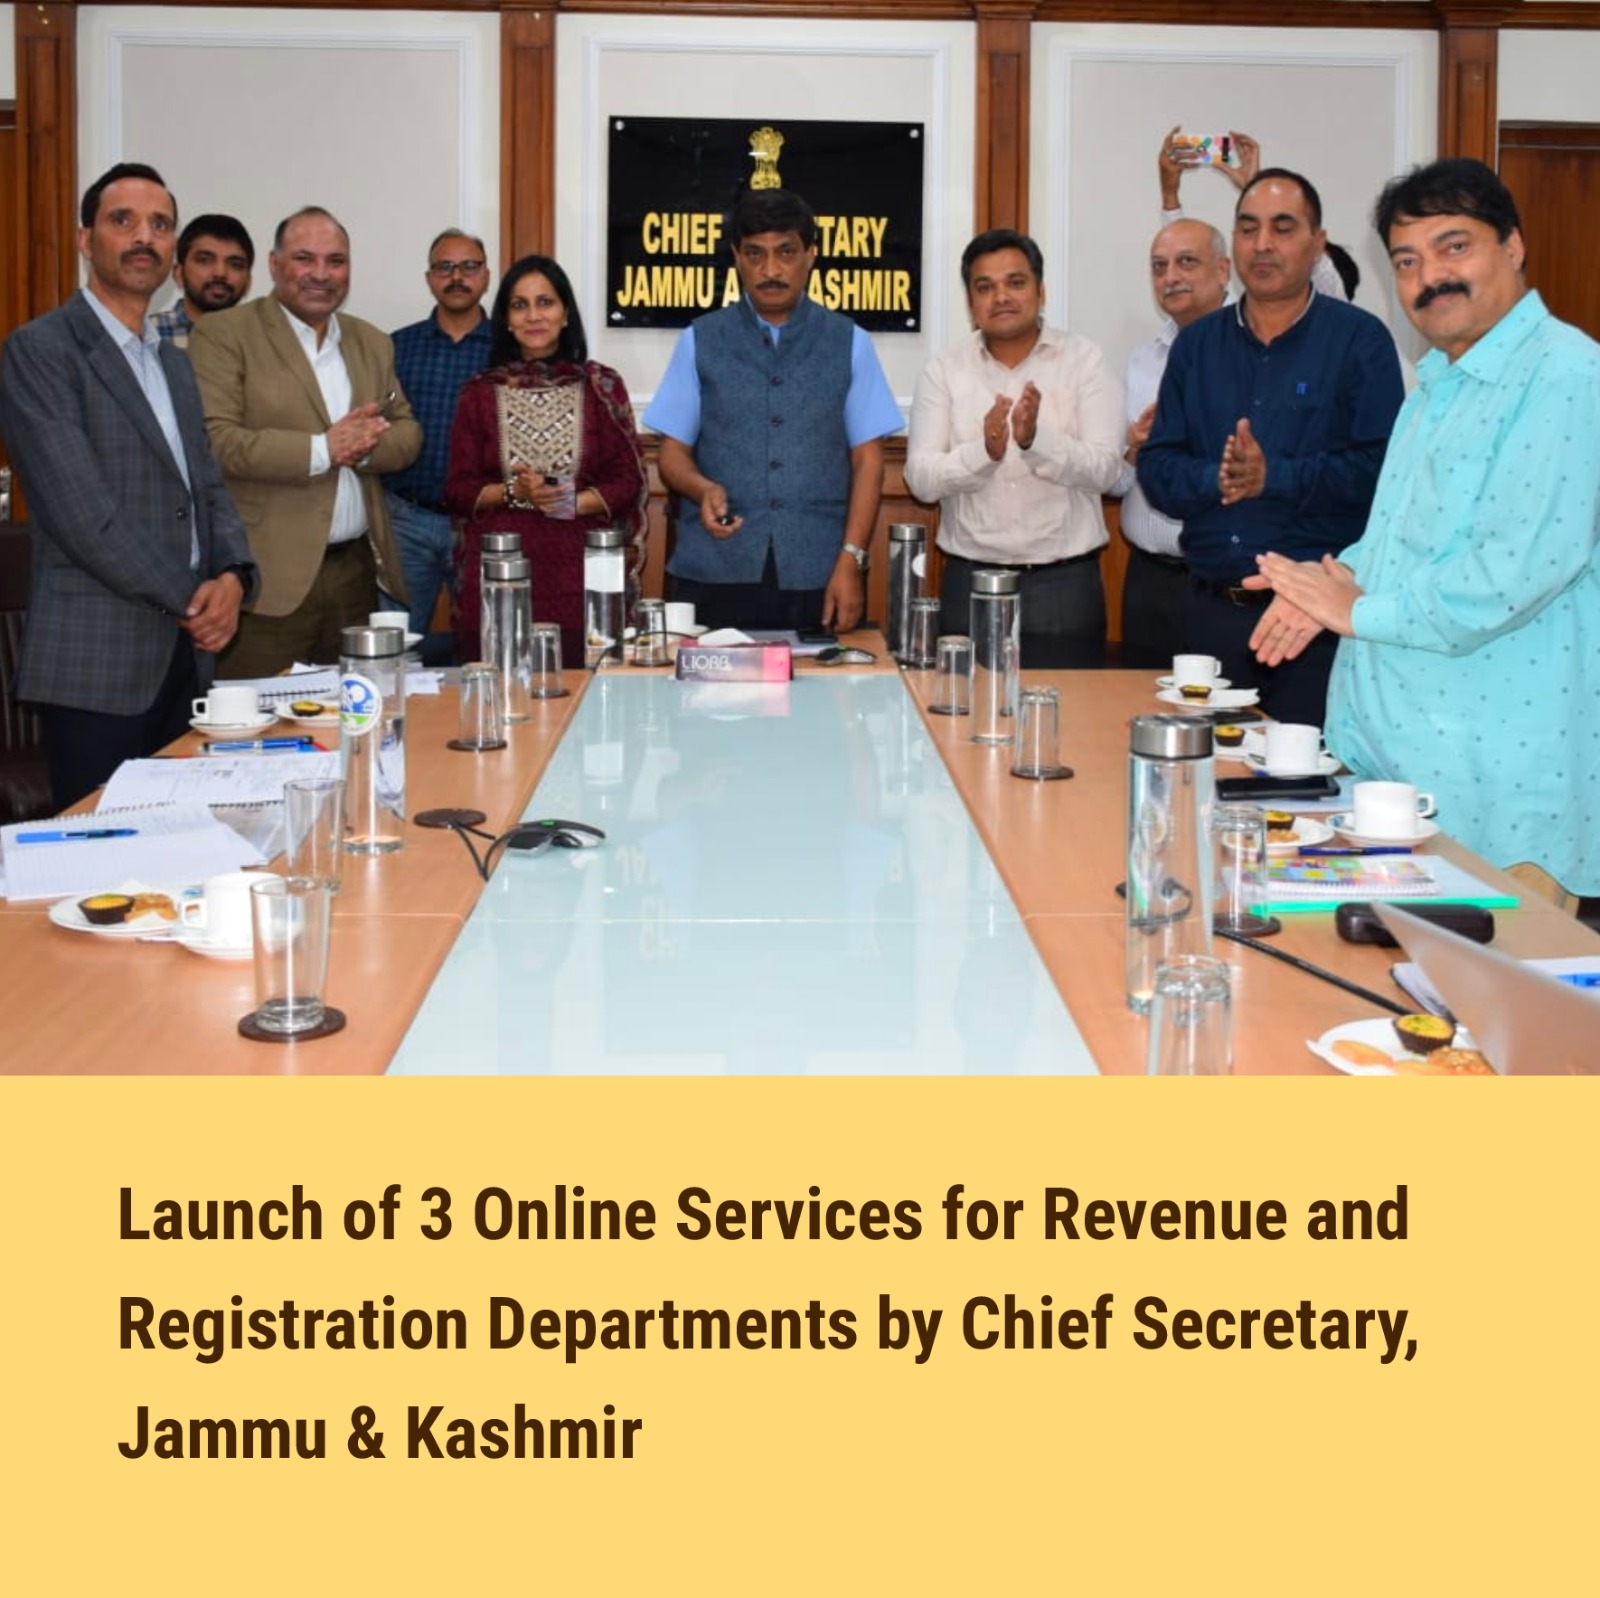 Image of राजस्व और पंजीकरण विभाग, जम्मू और कश्मीर के लिए एनआईसी द्वारा 3 ऑनलाइन सेवाओं का शुभारंभ।